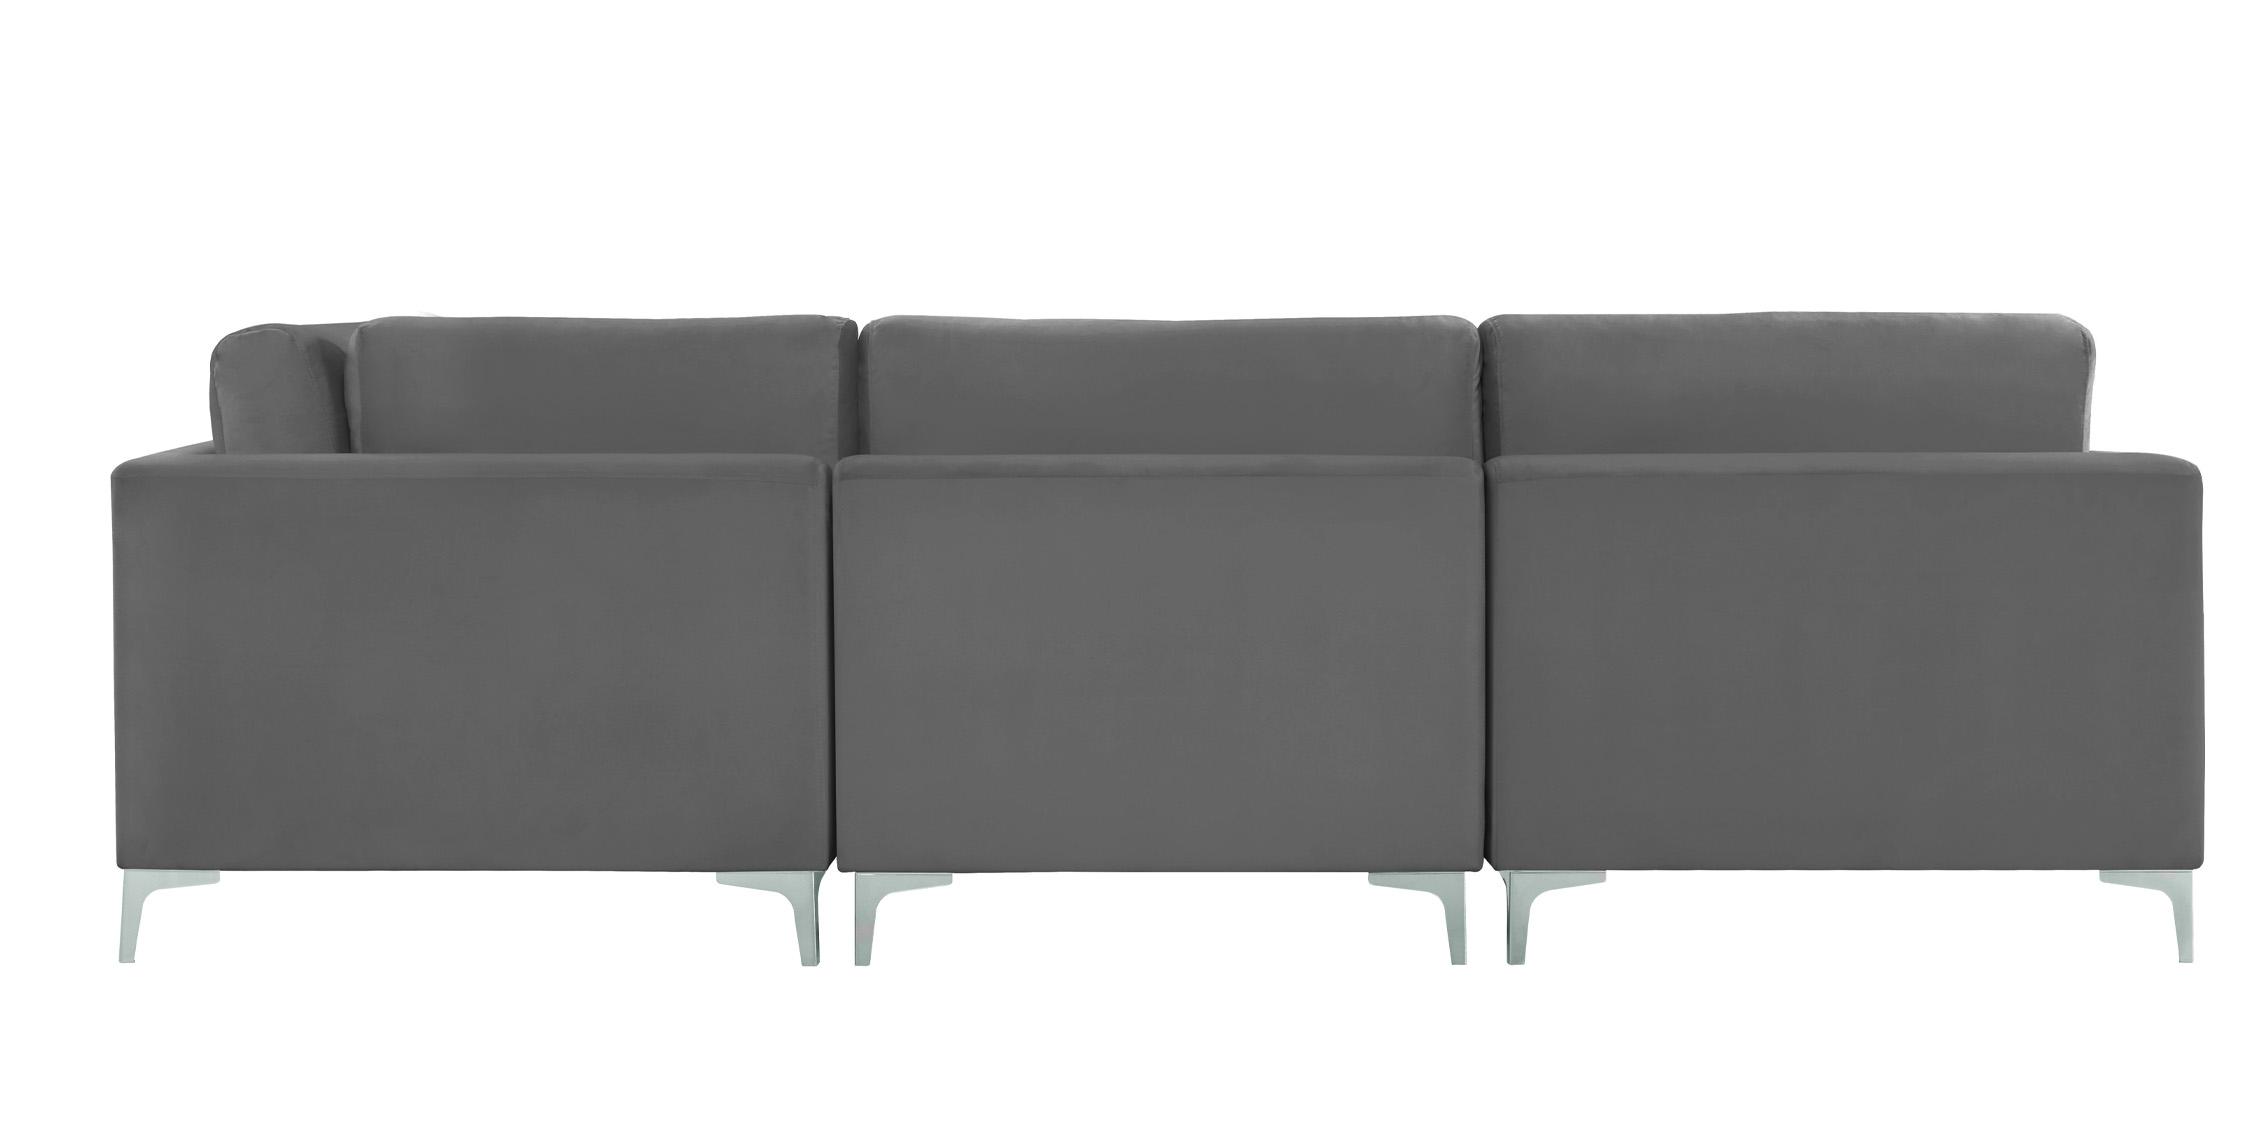 

    
605Grey-Sec7A Meridian Furniture Modular Sectional Sofa
